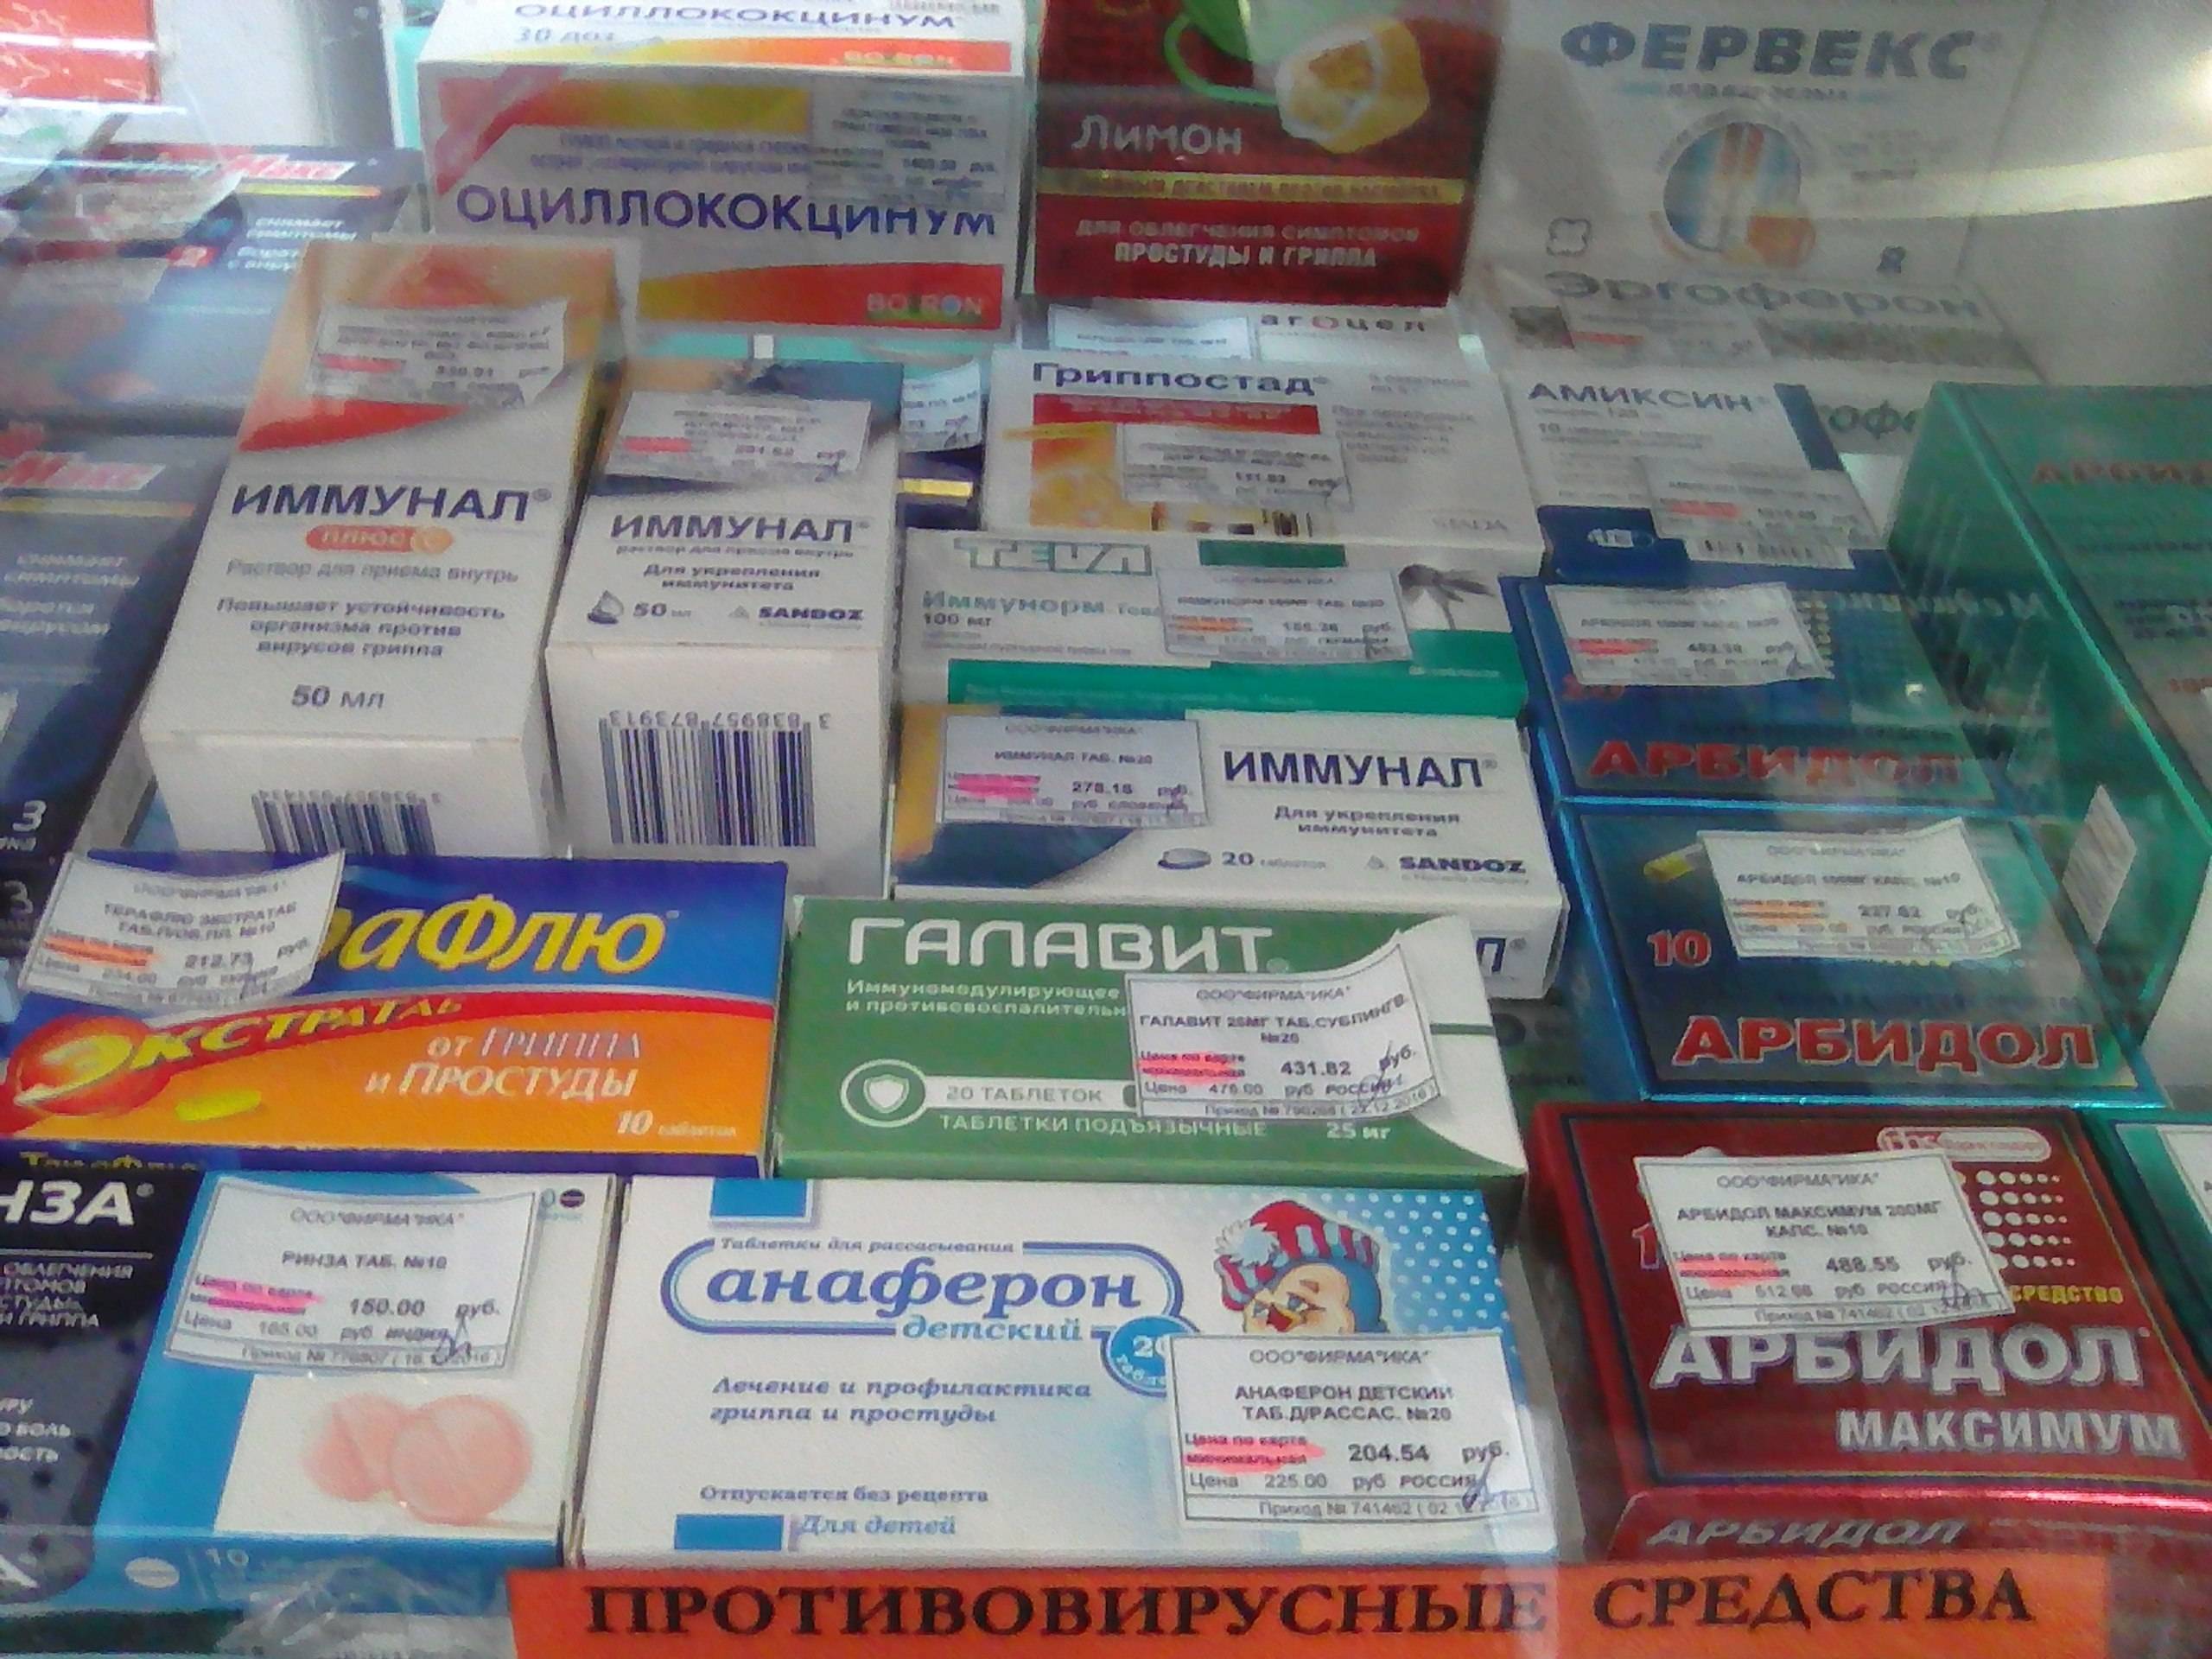 Против гриппа и простуды препараты противовирусные, и орви, эффективные, дешевые, народные